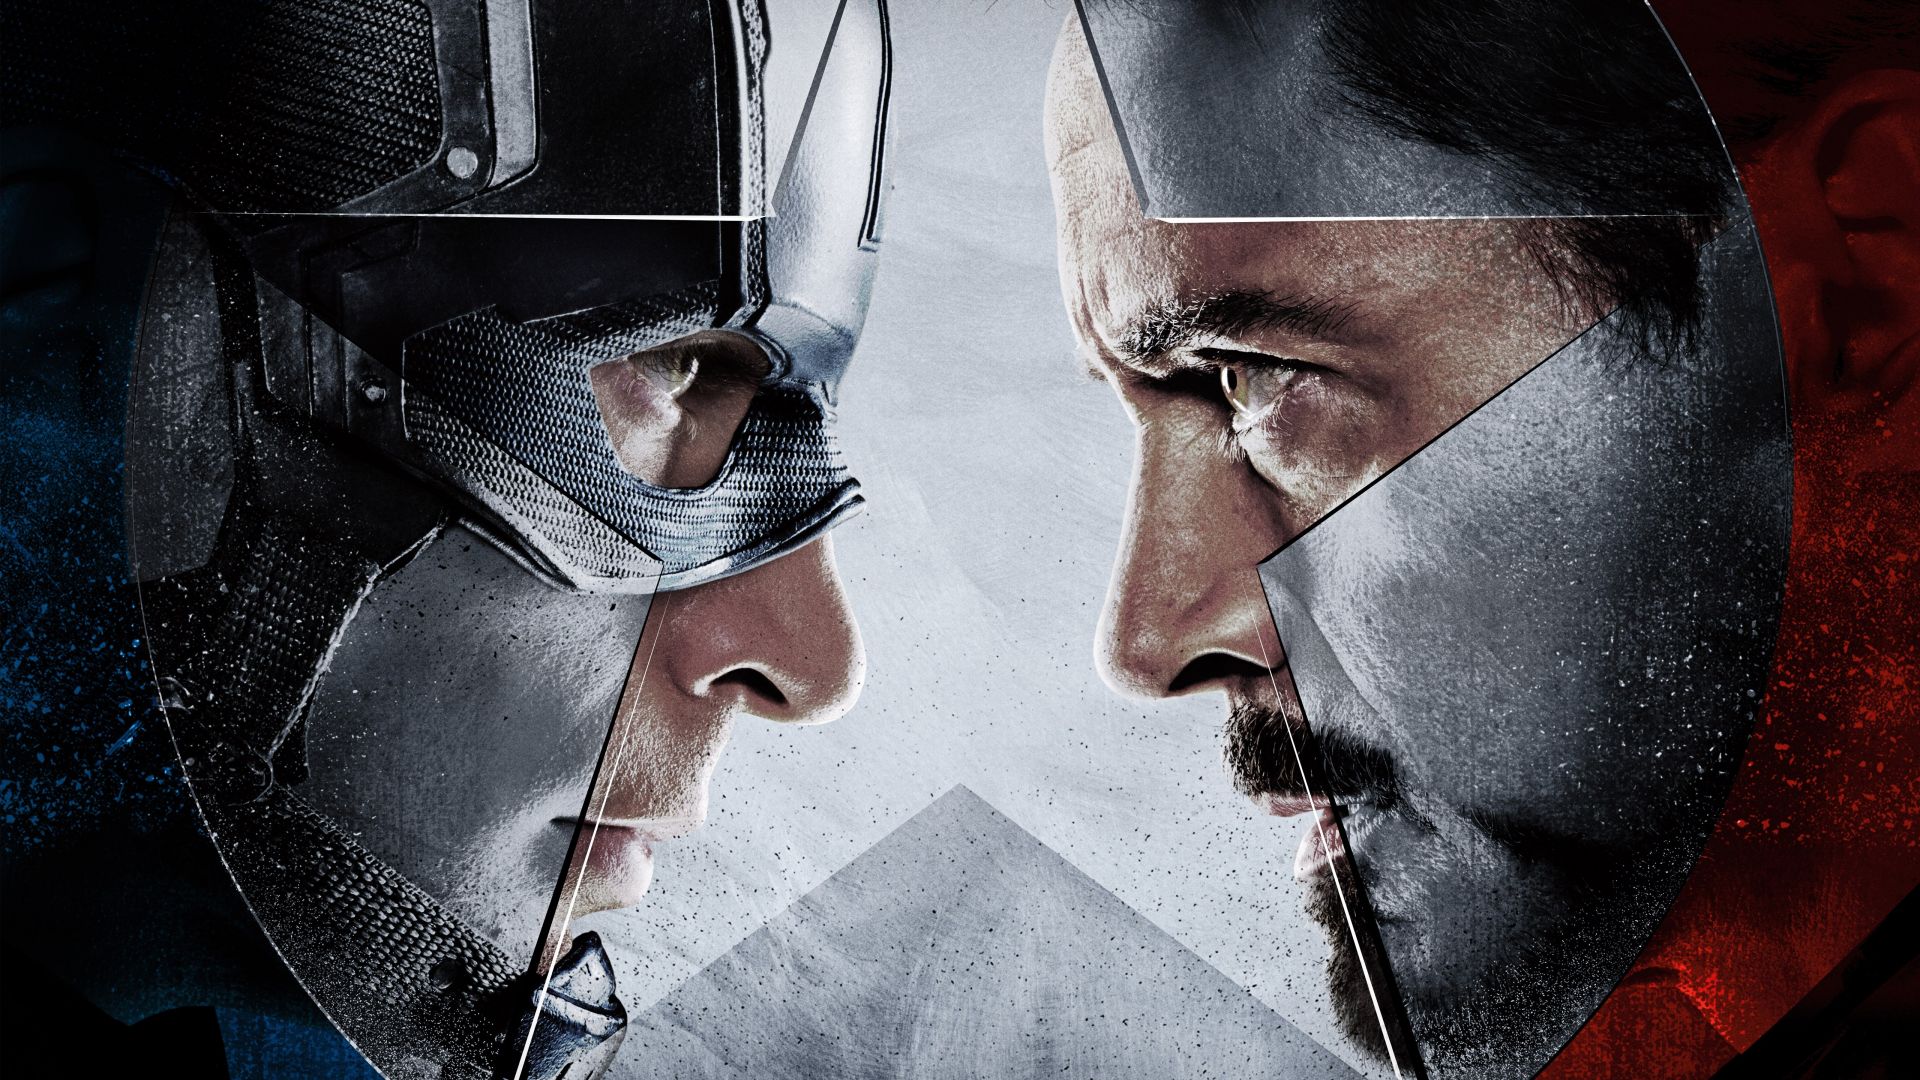 Первый мститель: Гражданская война, железный человек, Марвел, лучшие фильмы 2016, Captain America 3: civil war, Iron Man, Marvel, best movies of 2016 (horizontal)